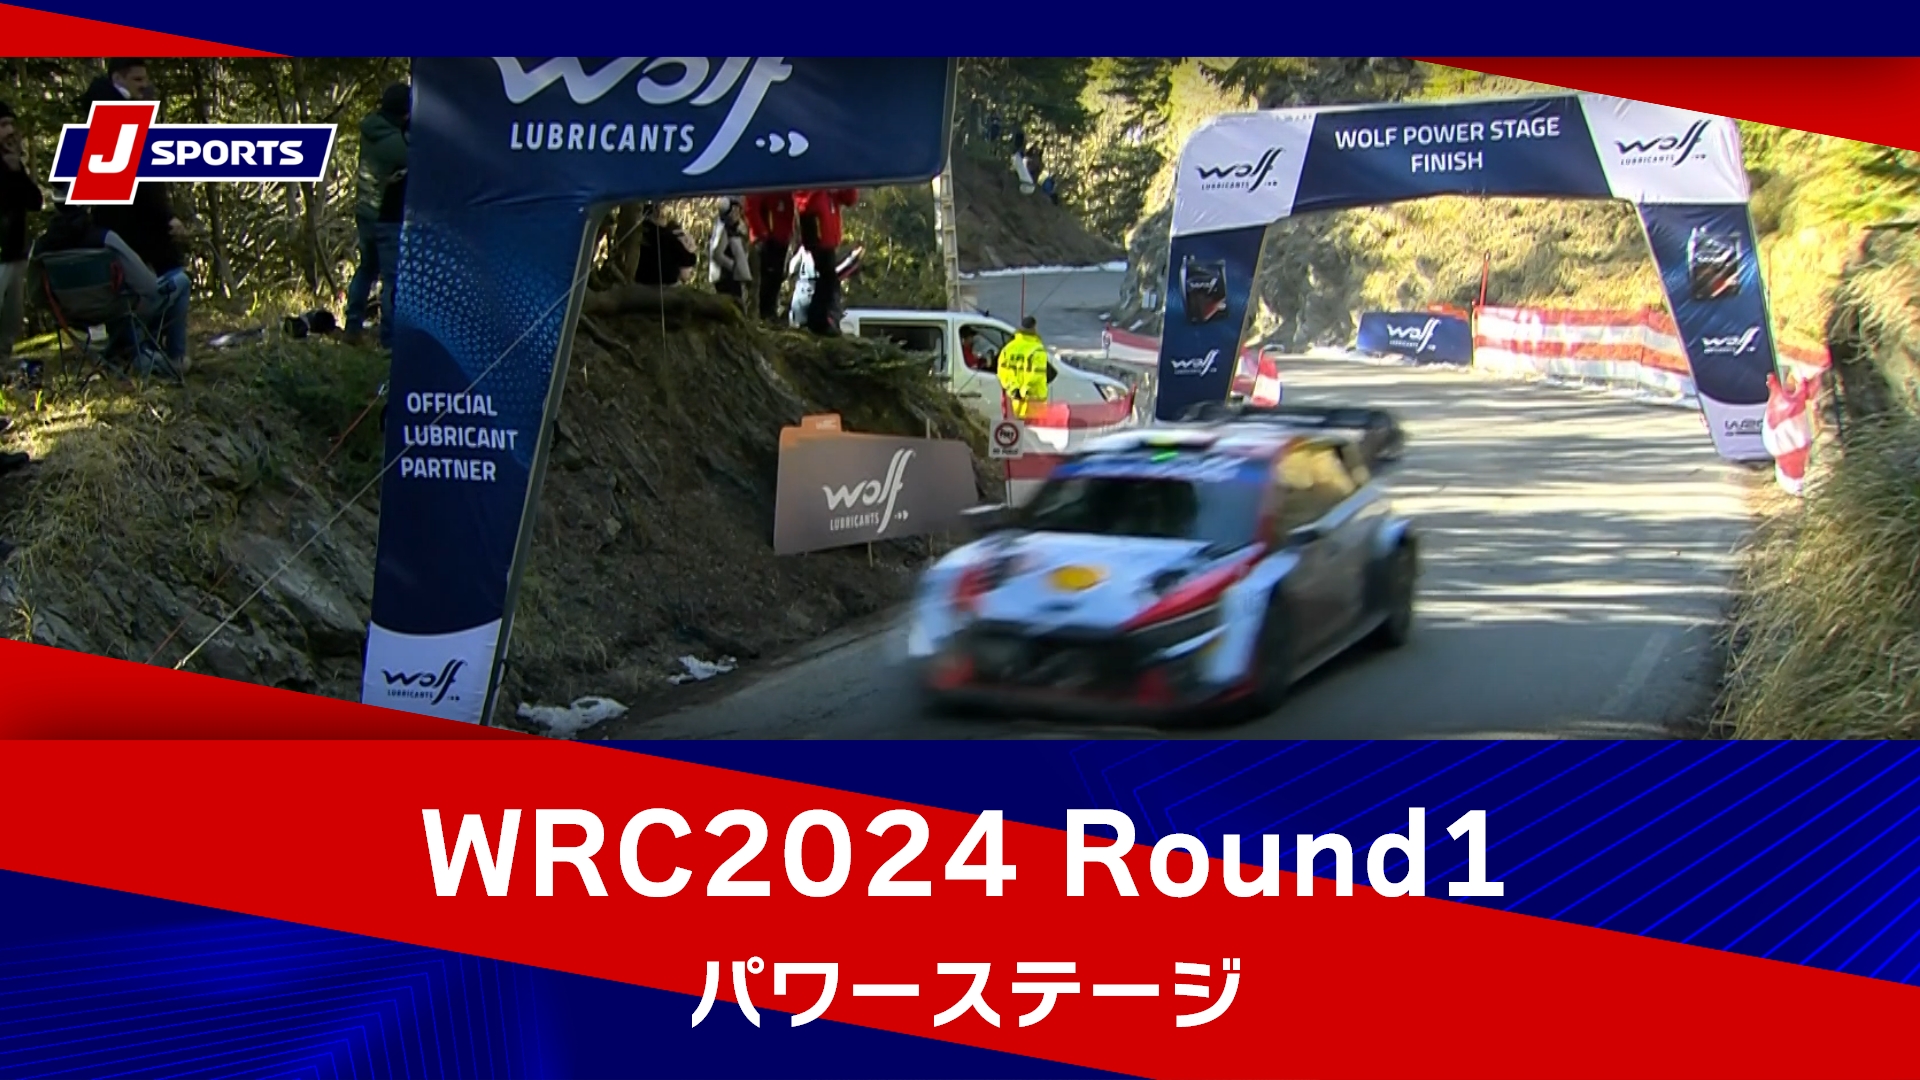 【ハイライト】WRC世界ラリー選手権 2024 Round1 ラリー・モンテカルロ パワーステージ#wrc